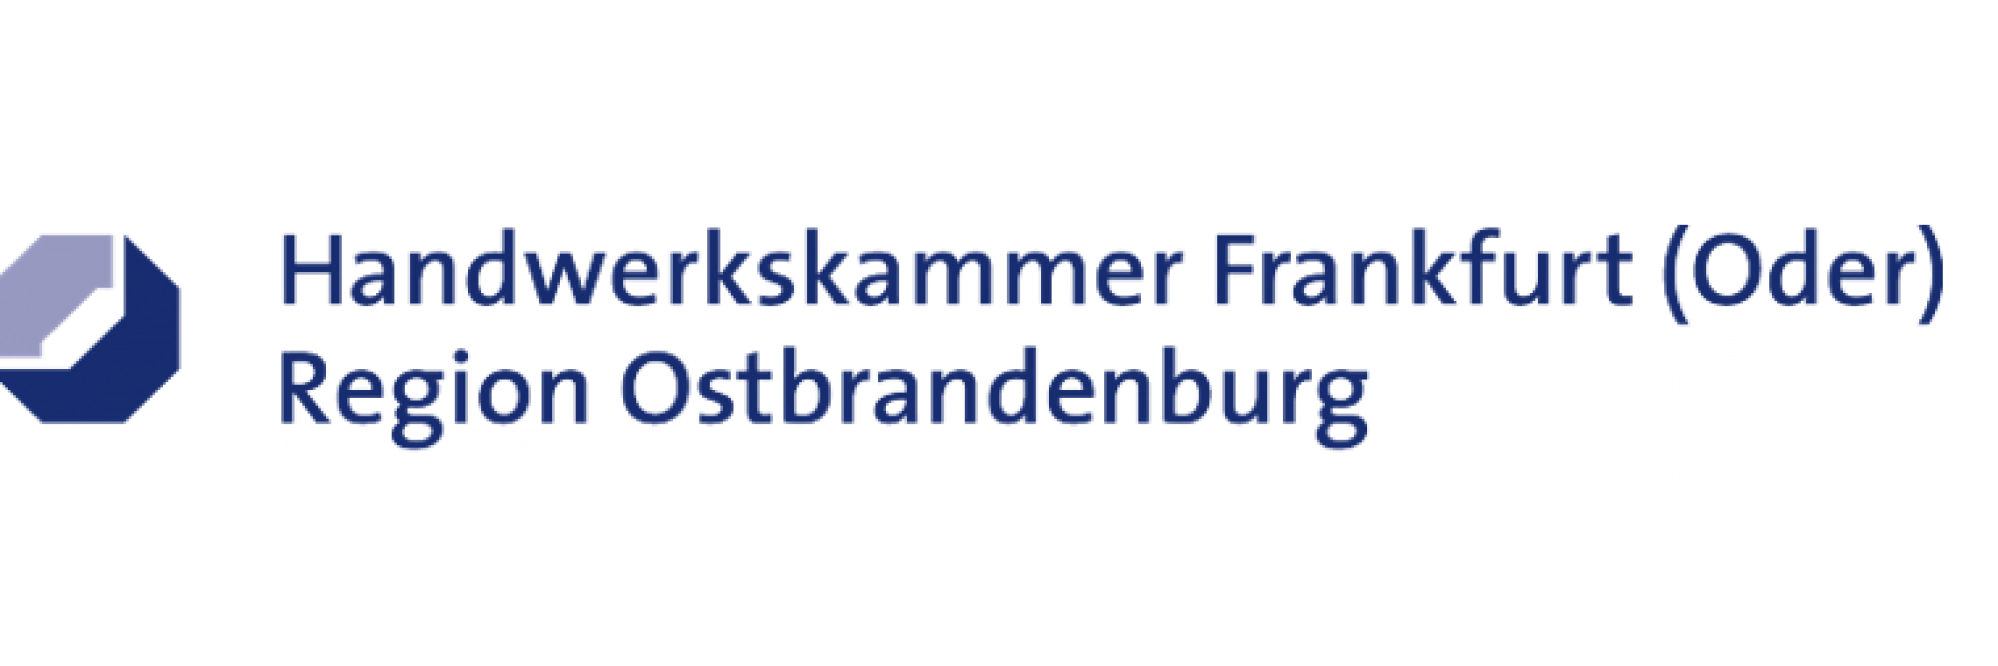 Handwerkskammer Frankfurt Oder Region Ostbrandenburg 